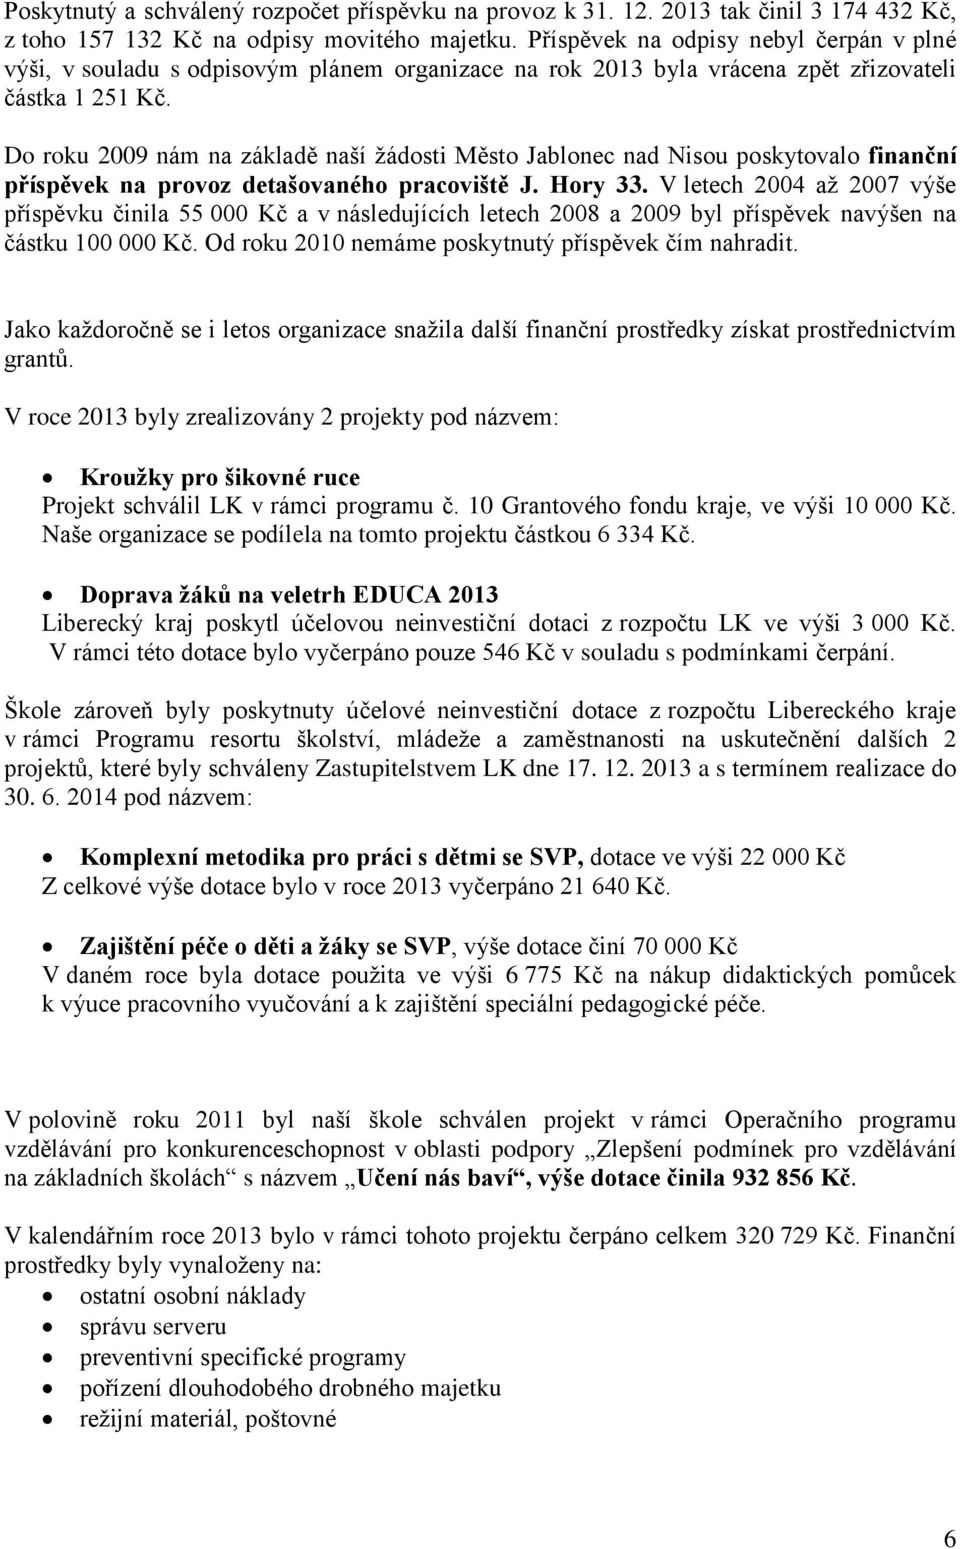 Do roku 2009 nám na základě naší žádosti Město Jablonec nad Nisou poskytovalo finanční příspěvek na provoz detašovaného pracoviště J. Hory 33.